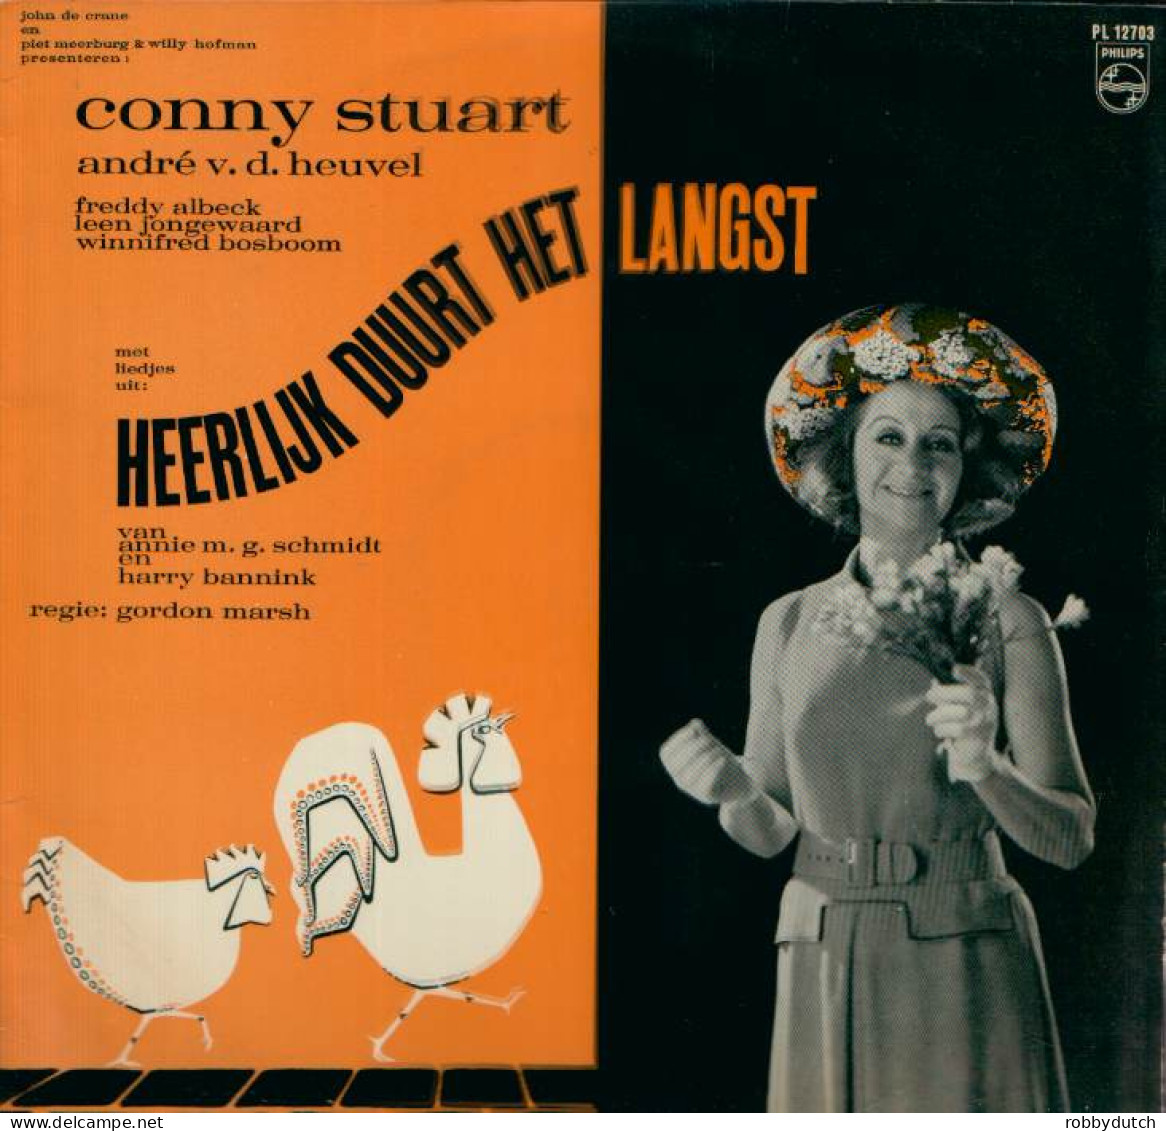 * LP *  HEERLIJK DUURT HET LANGST (Annie M.G. Schmidt En Harry Bannink) (Holland 1966) - Musicals